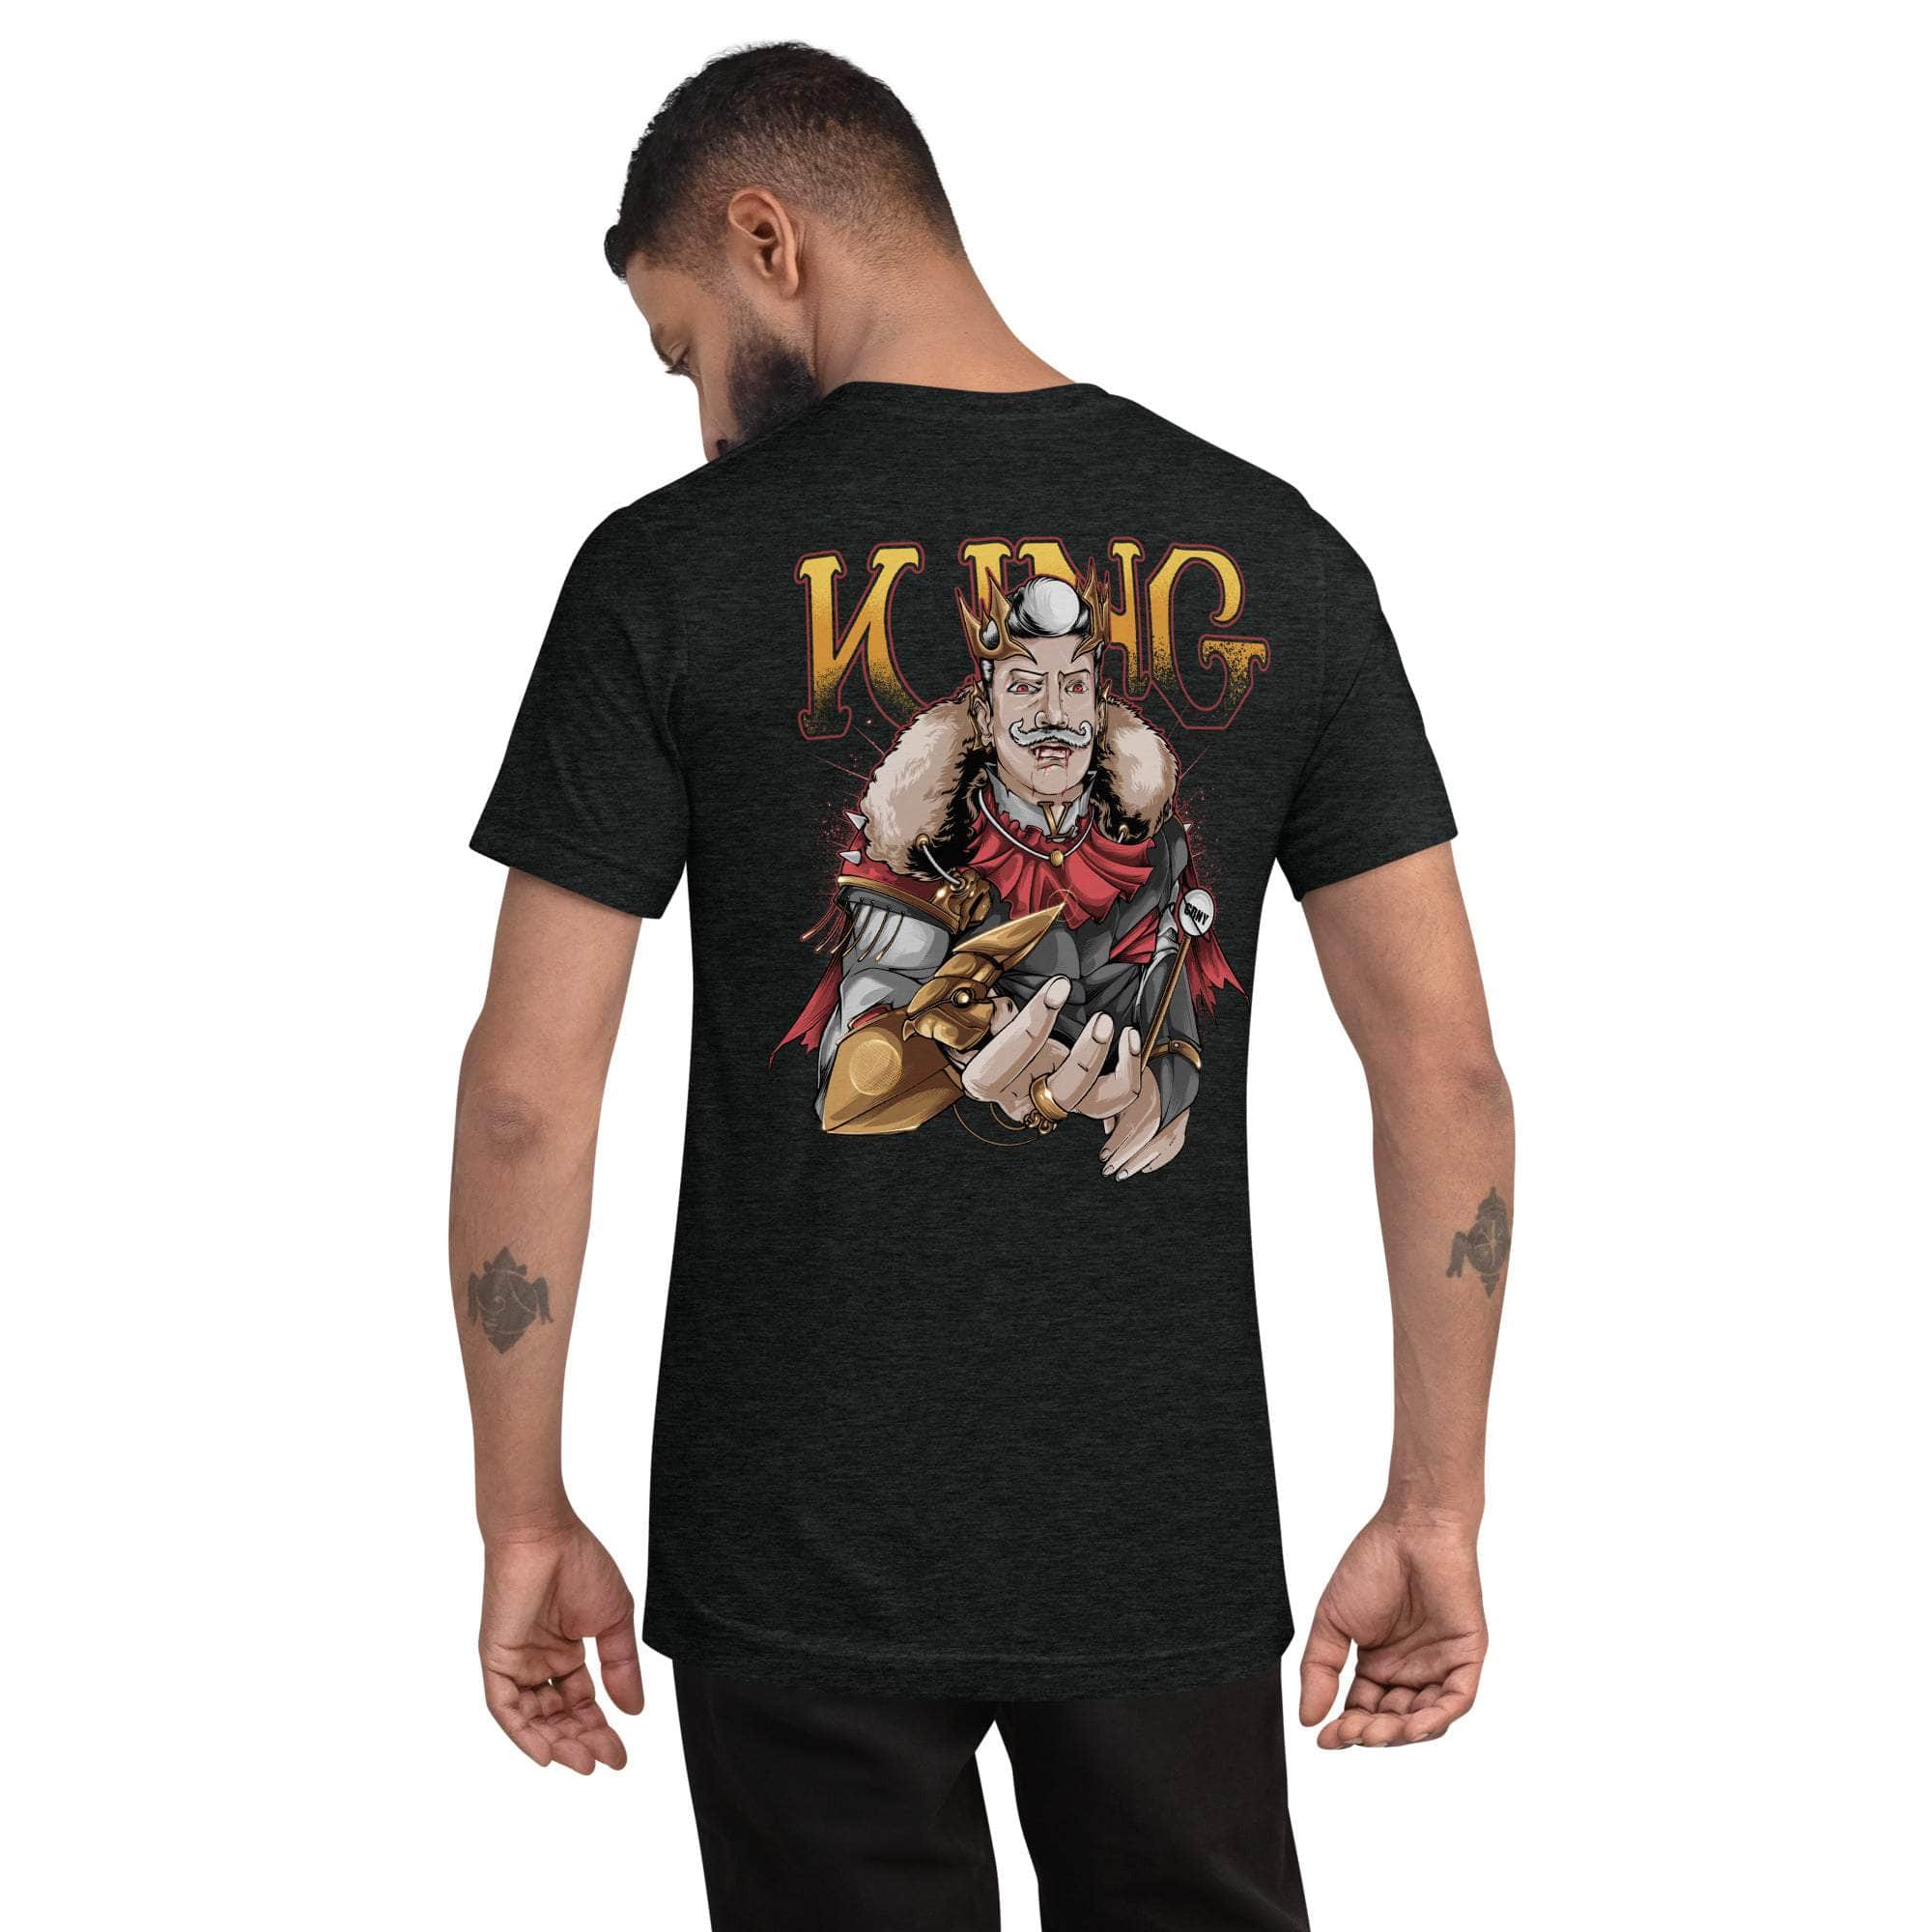 GBNY Charcoal-Black Triblend / XS Vamp Life X GBNY "Vamp King" T-shirt - Men's 8741511_6504